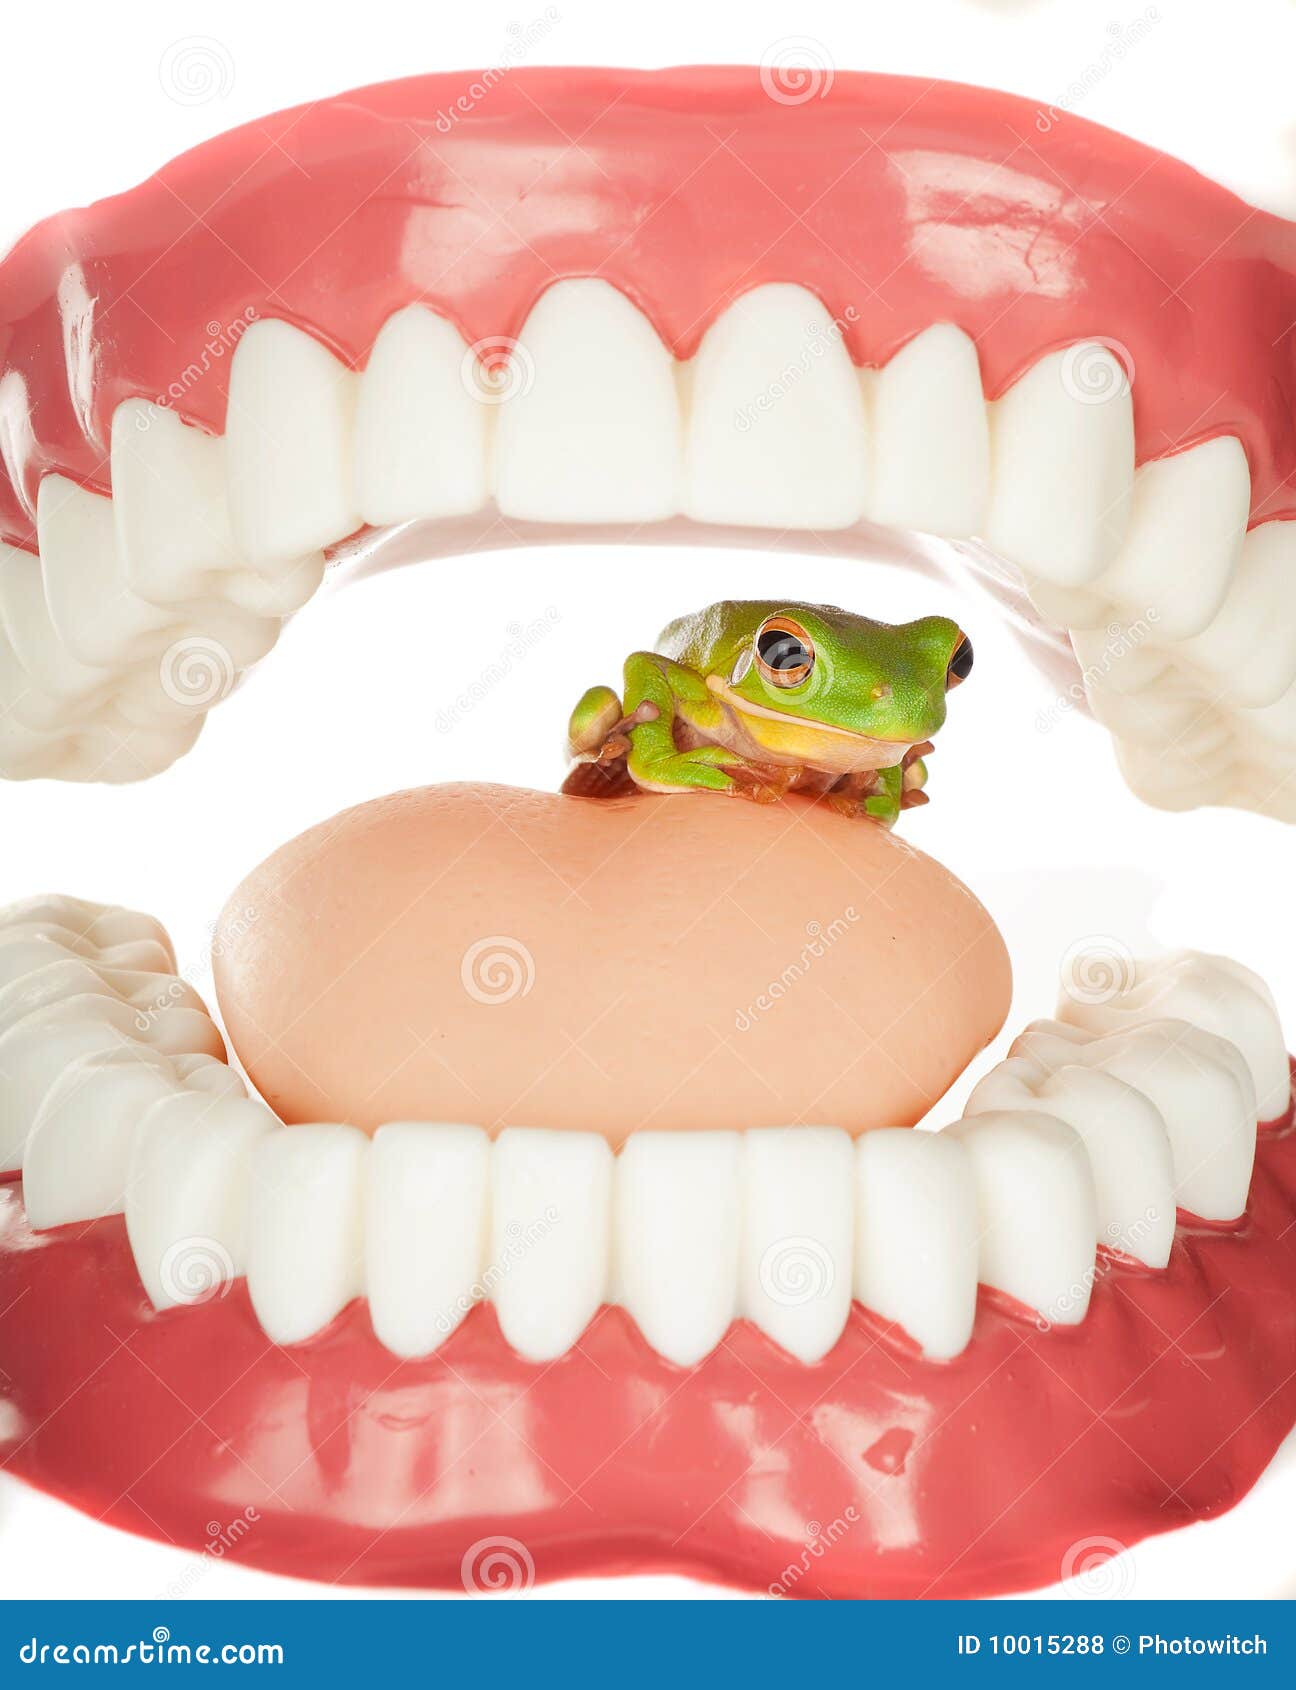 frog in throat